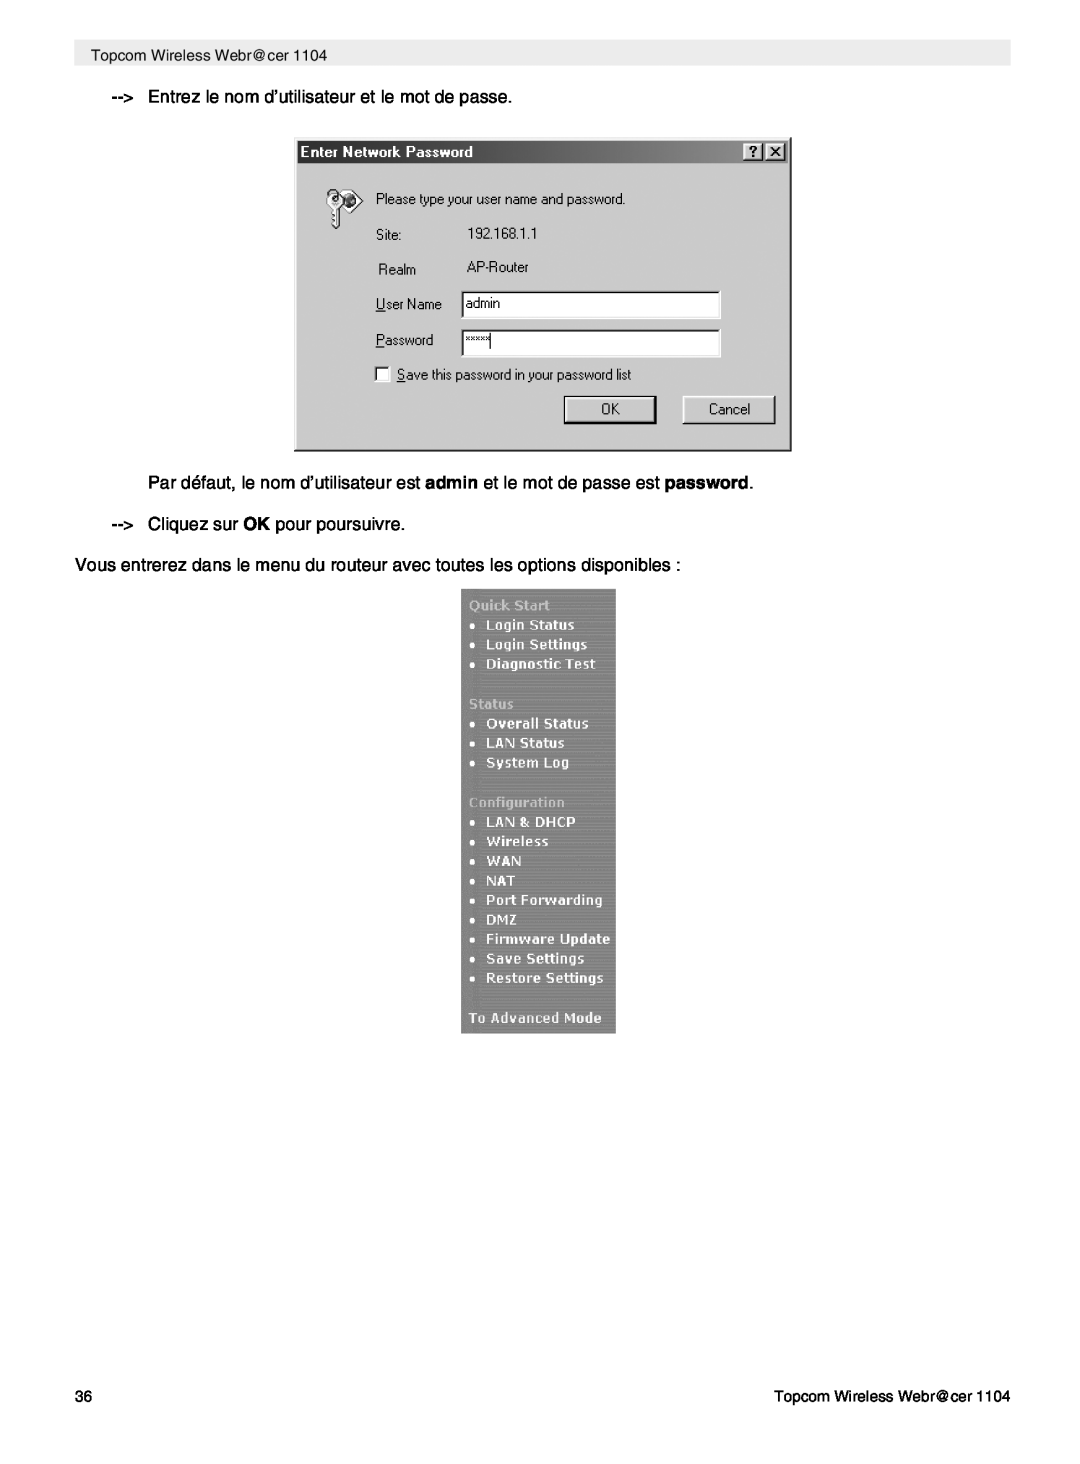 Topcom 1104 manual do utilizador Entrez le nom d’utilisateur et le mot de passe 